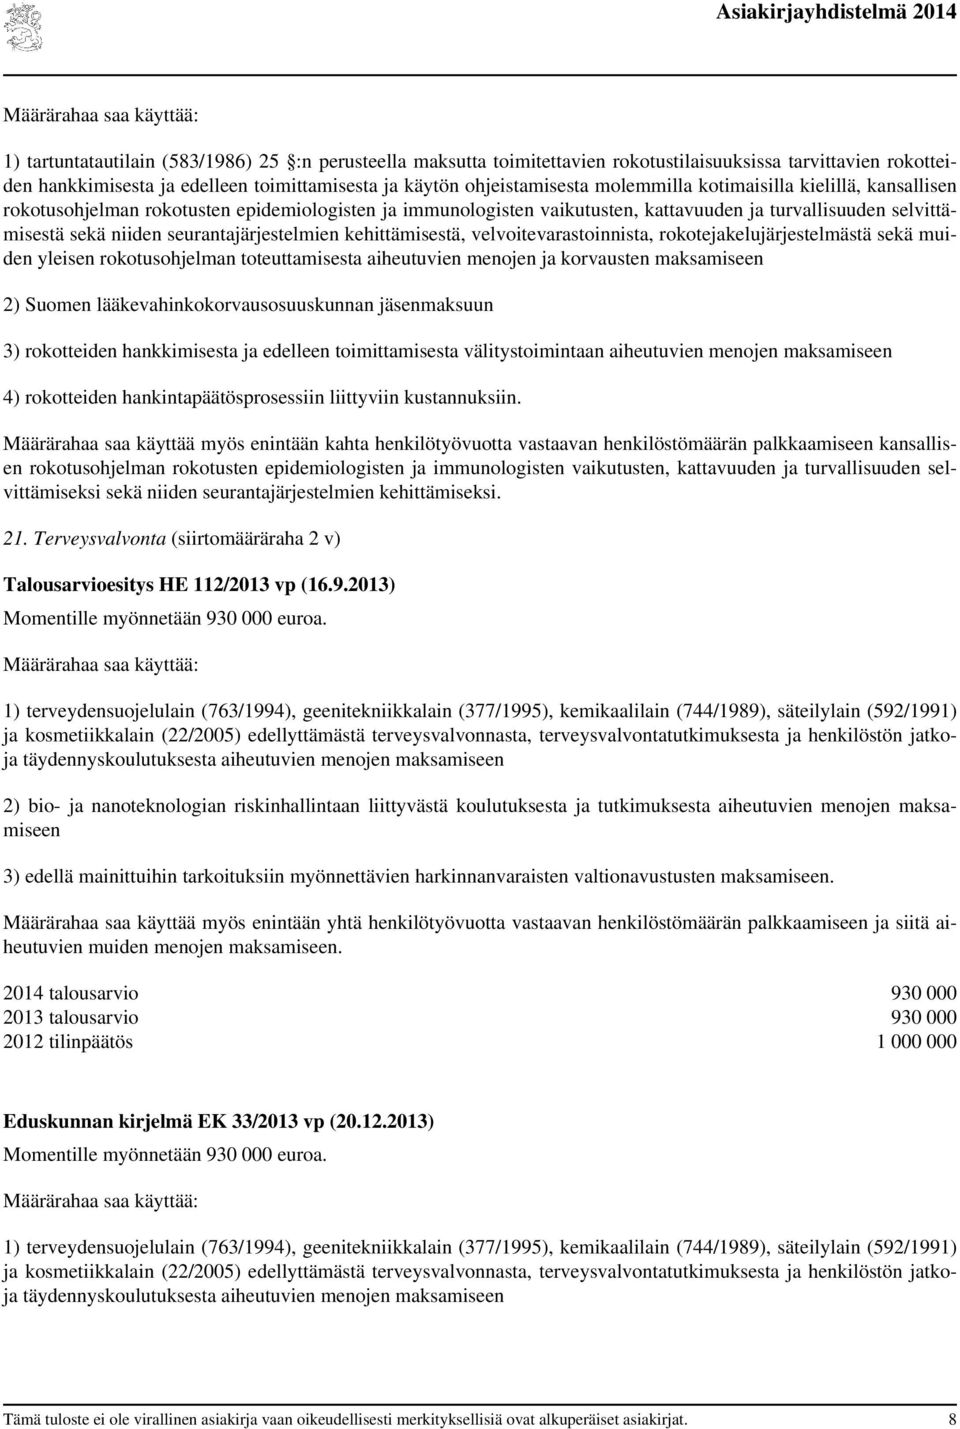 kehittämisestä, velvoitevarastoinnista, rokotejakelujärjestelmästä sekä muiden yleisen rokotusohjelman toteuttamisesta aiheutuvien menojen ja korvausten maksamiseen 2) Suomen